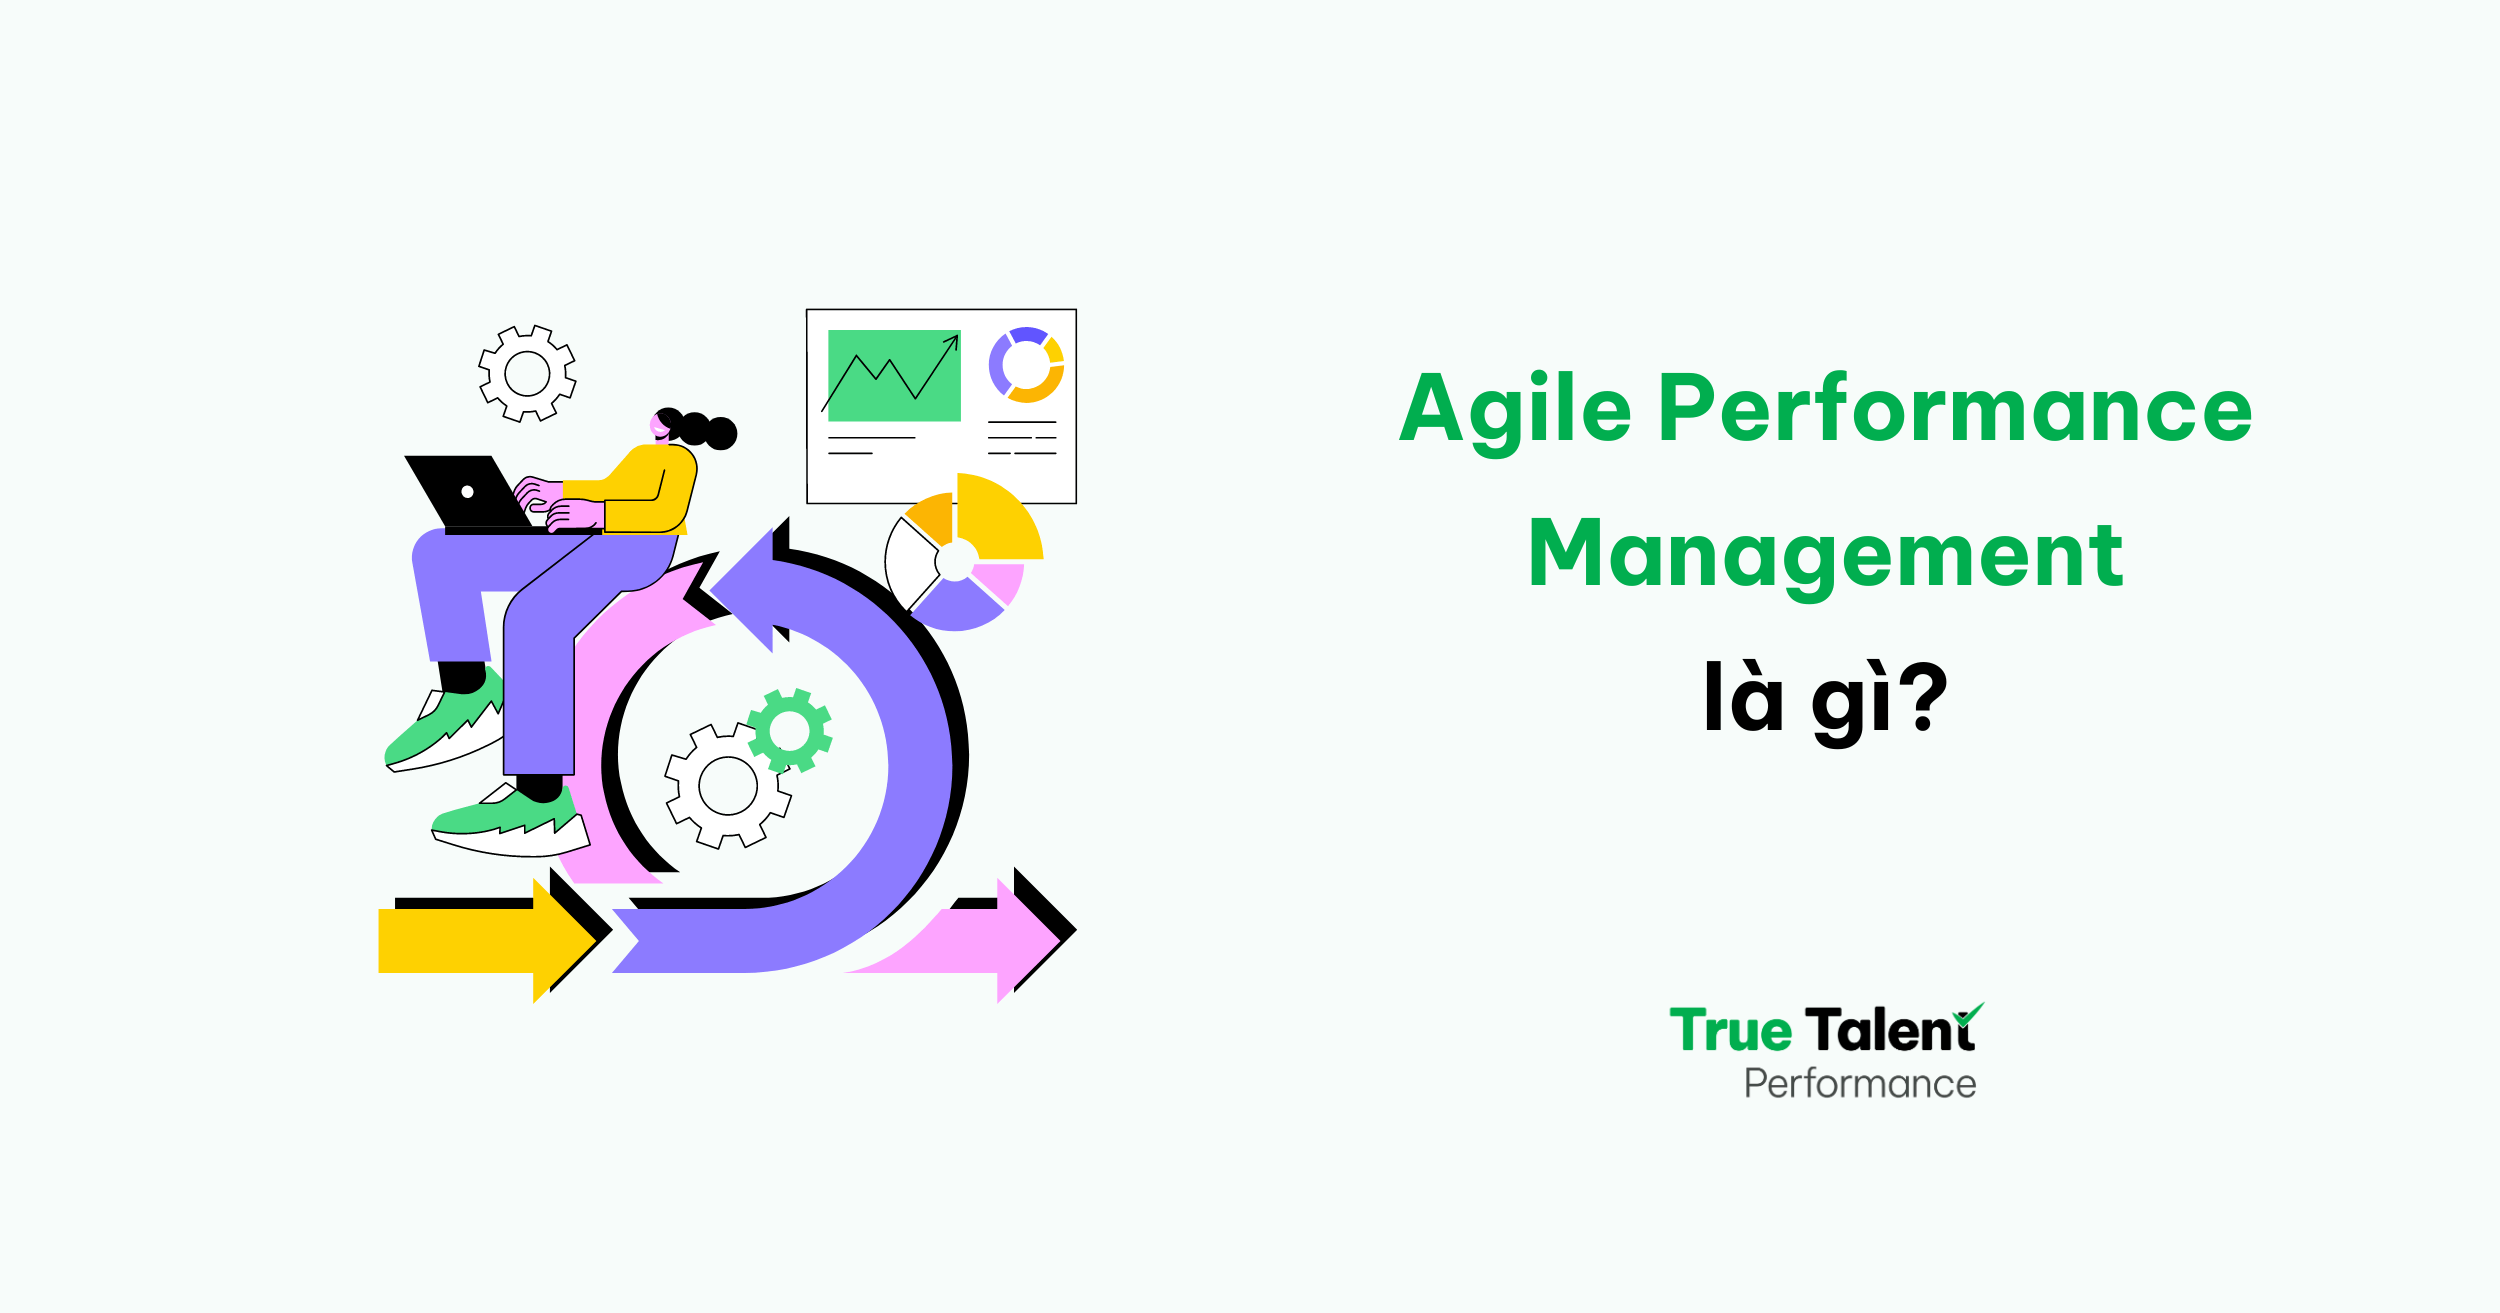 Agile Performance Management là gì?